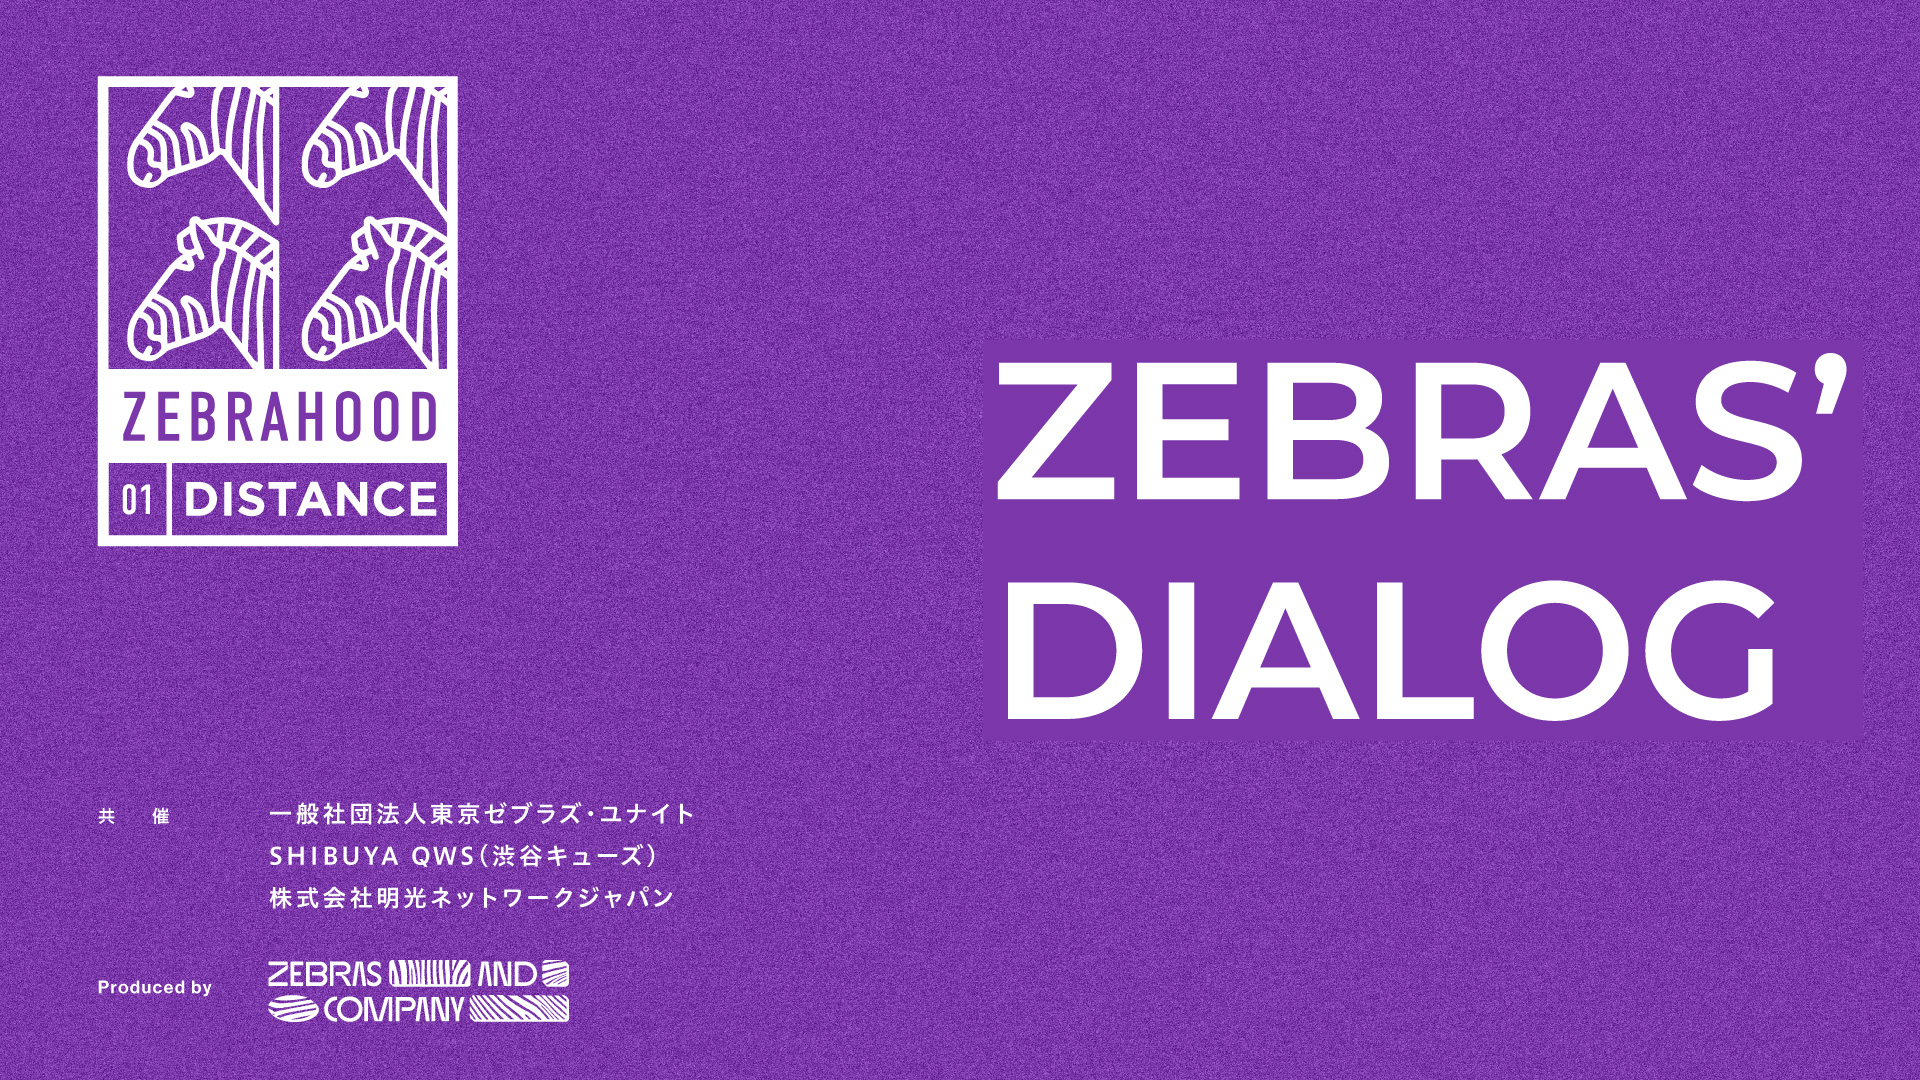 2022年1月16日〆切『ZEBRAS’ DIALOG』参加希望「ゼブラ企業」を募集します~2/4日本初ゼブラ企業カンファレンス『ZEBRAHOOD』in SHIBUYA QWS~のイメージ